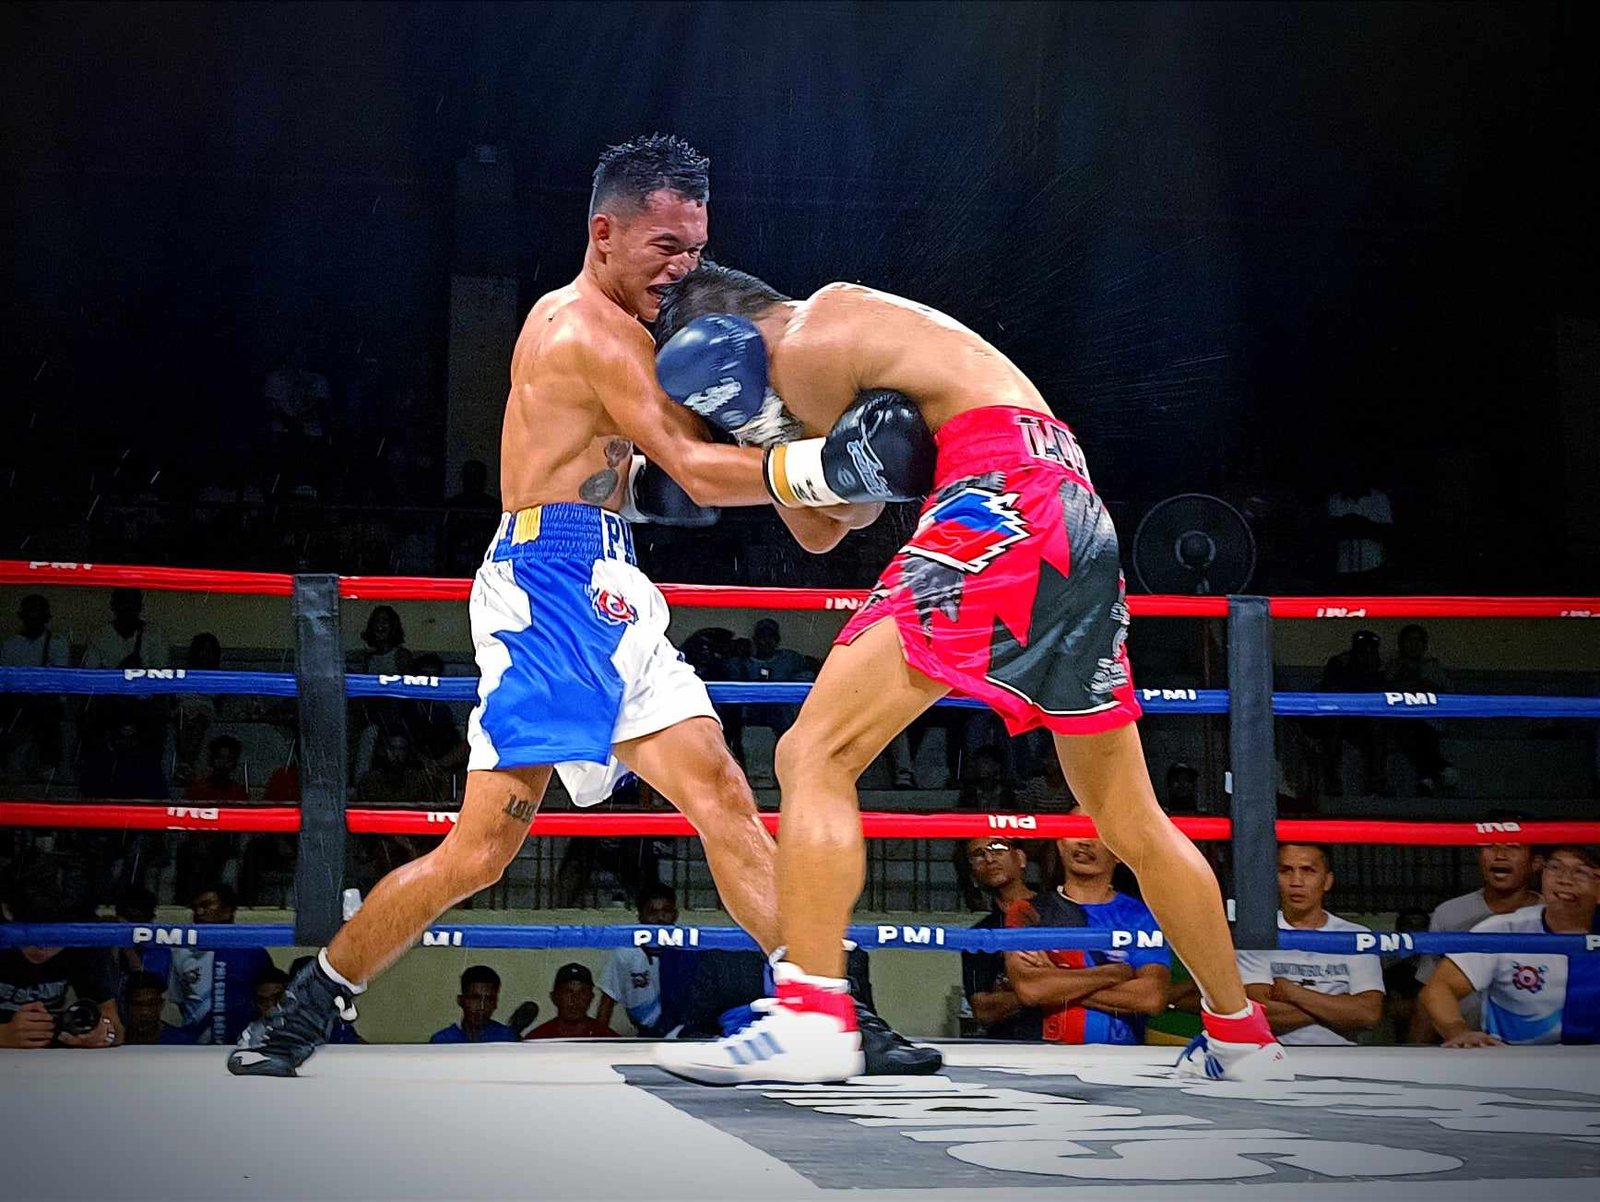 Jake Amparo’s comeback fight slated for June 24 in Bilar, Bohol